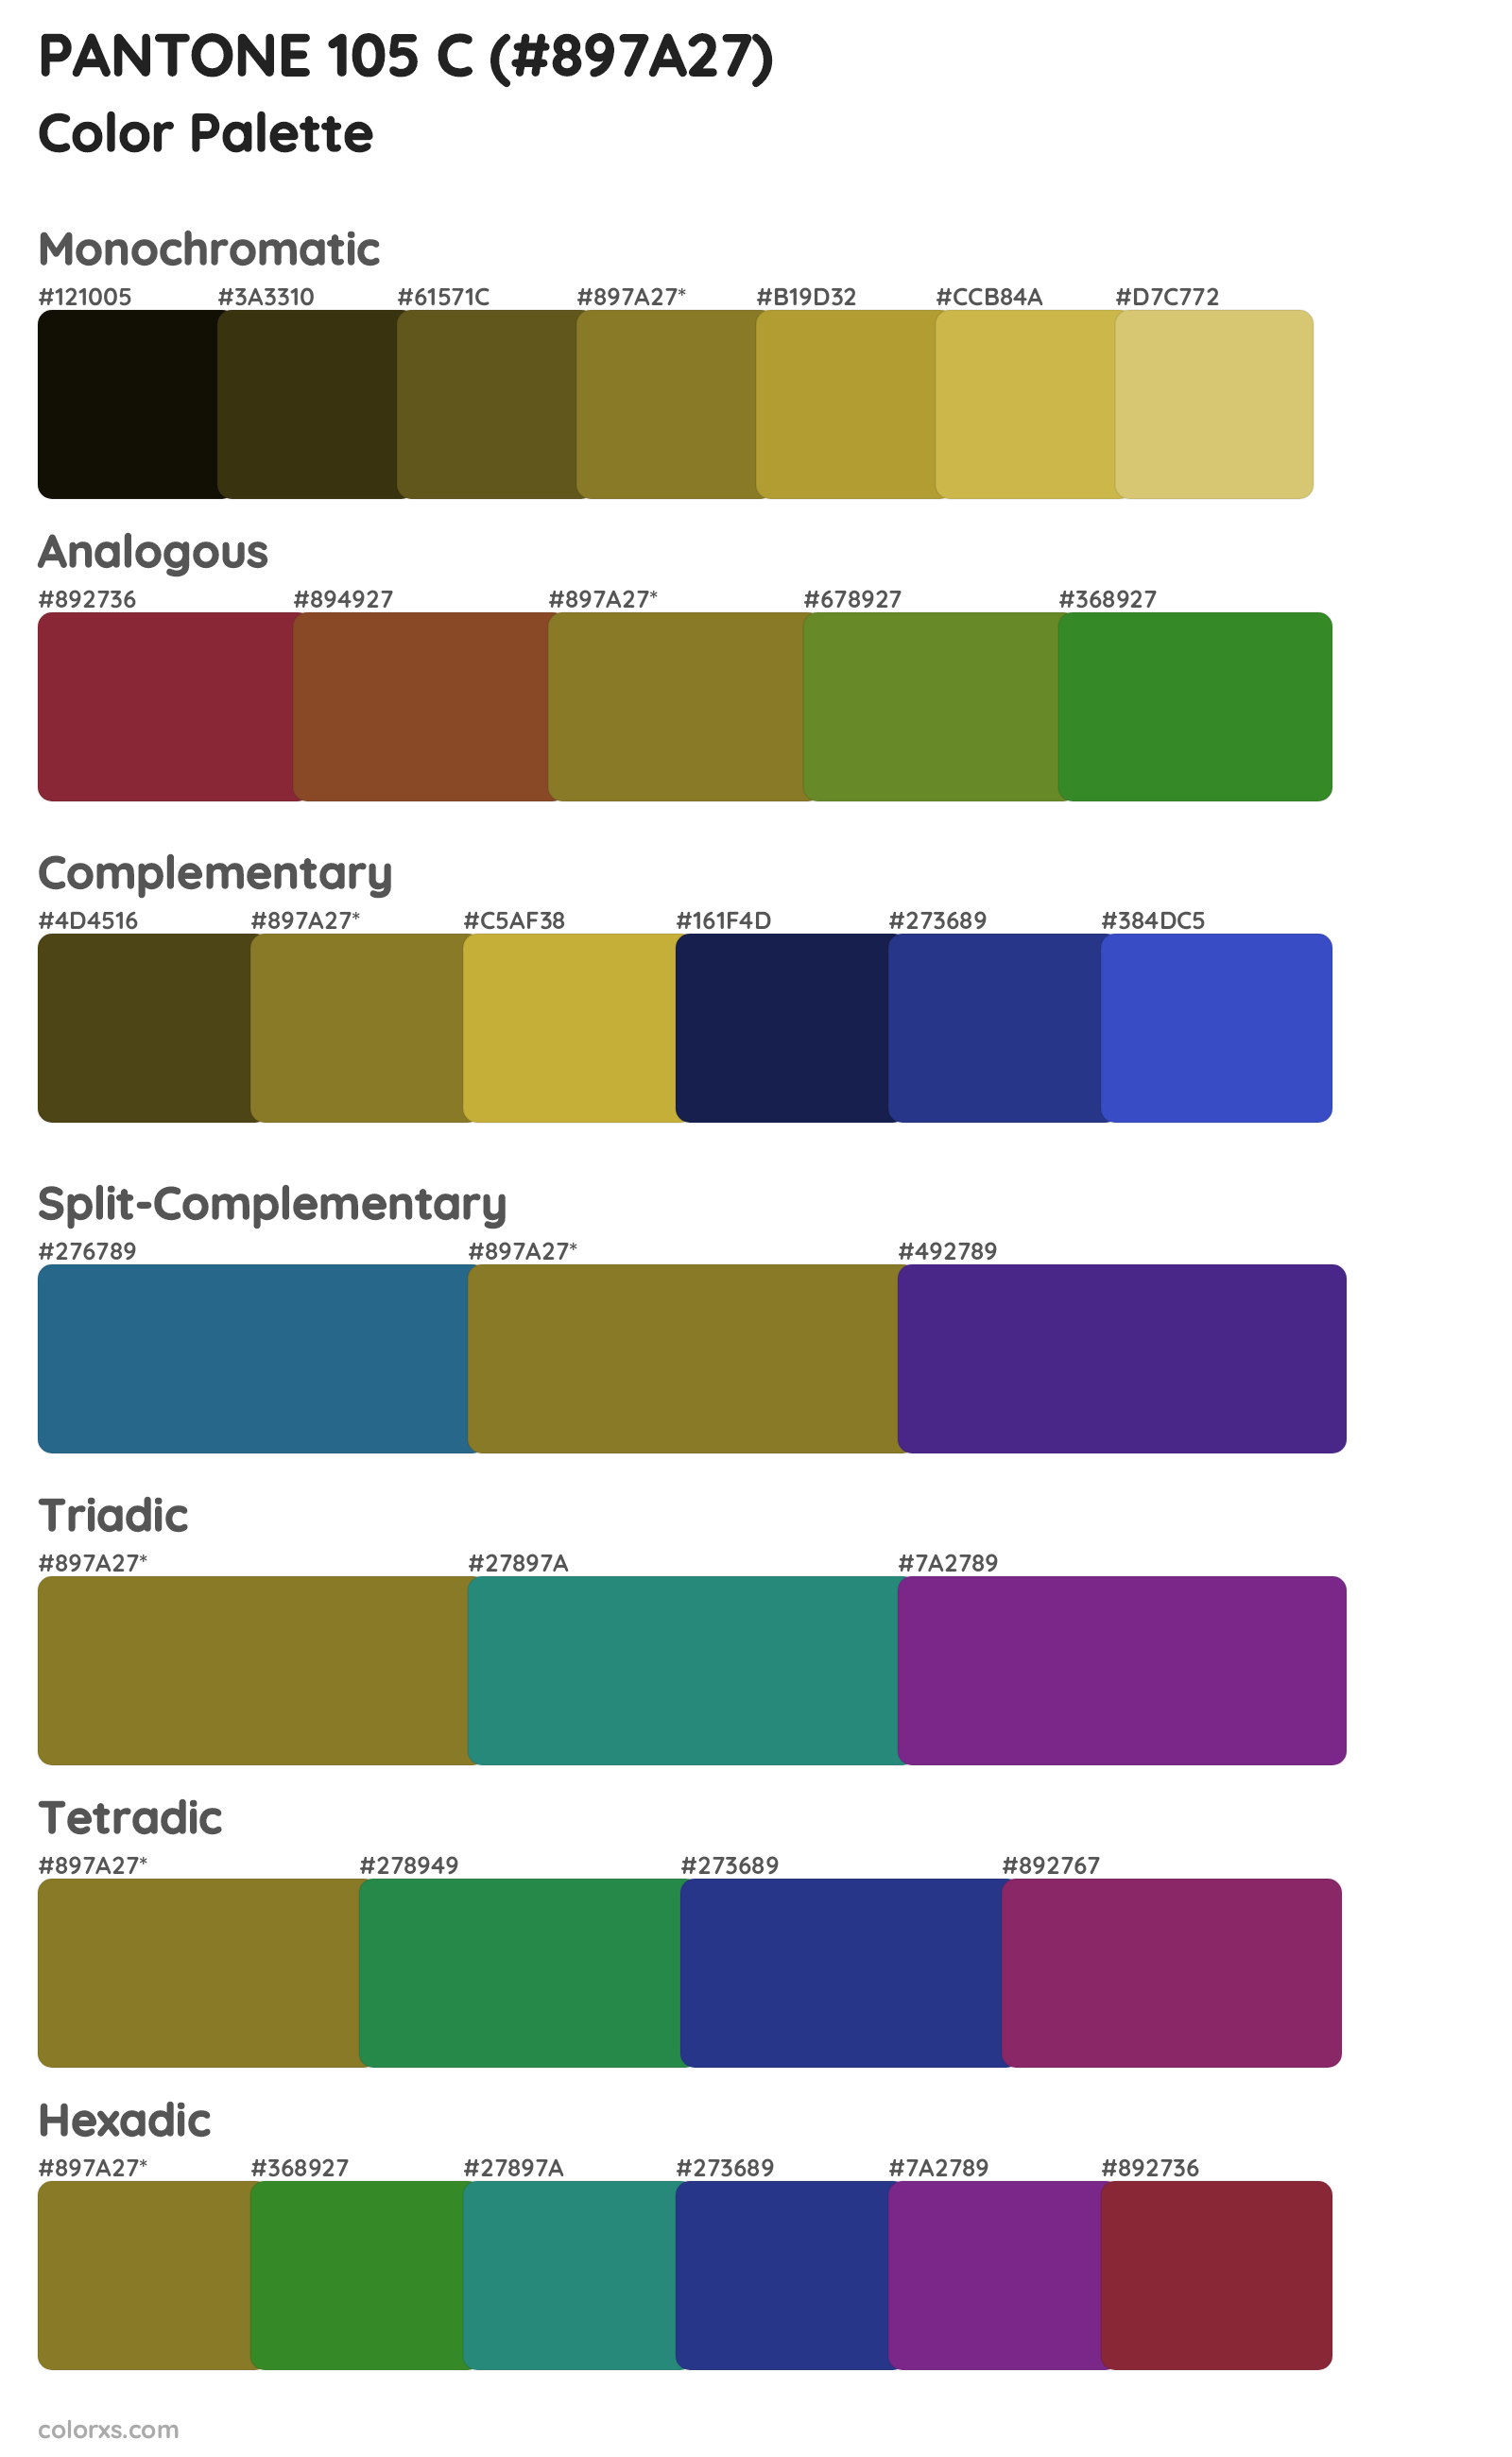 PANTONE 105 C Color Scheme Palettes